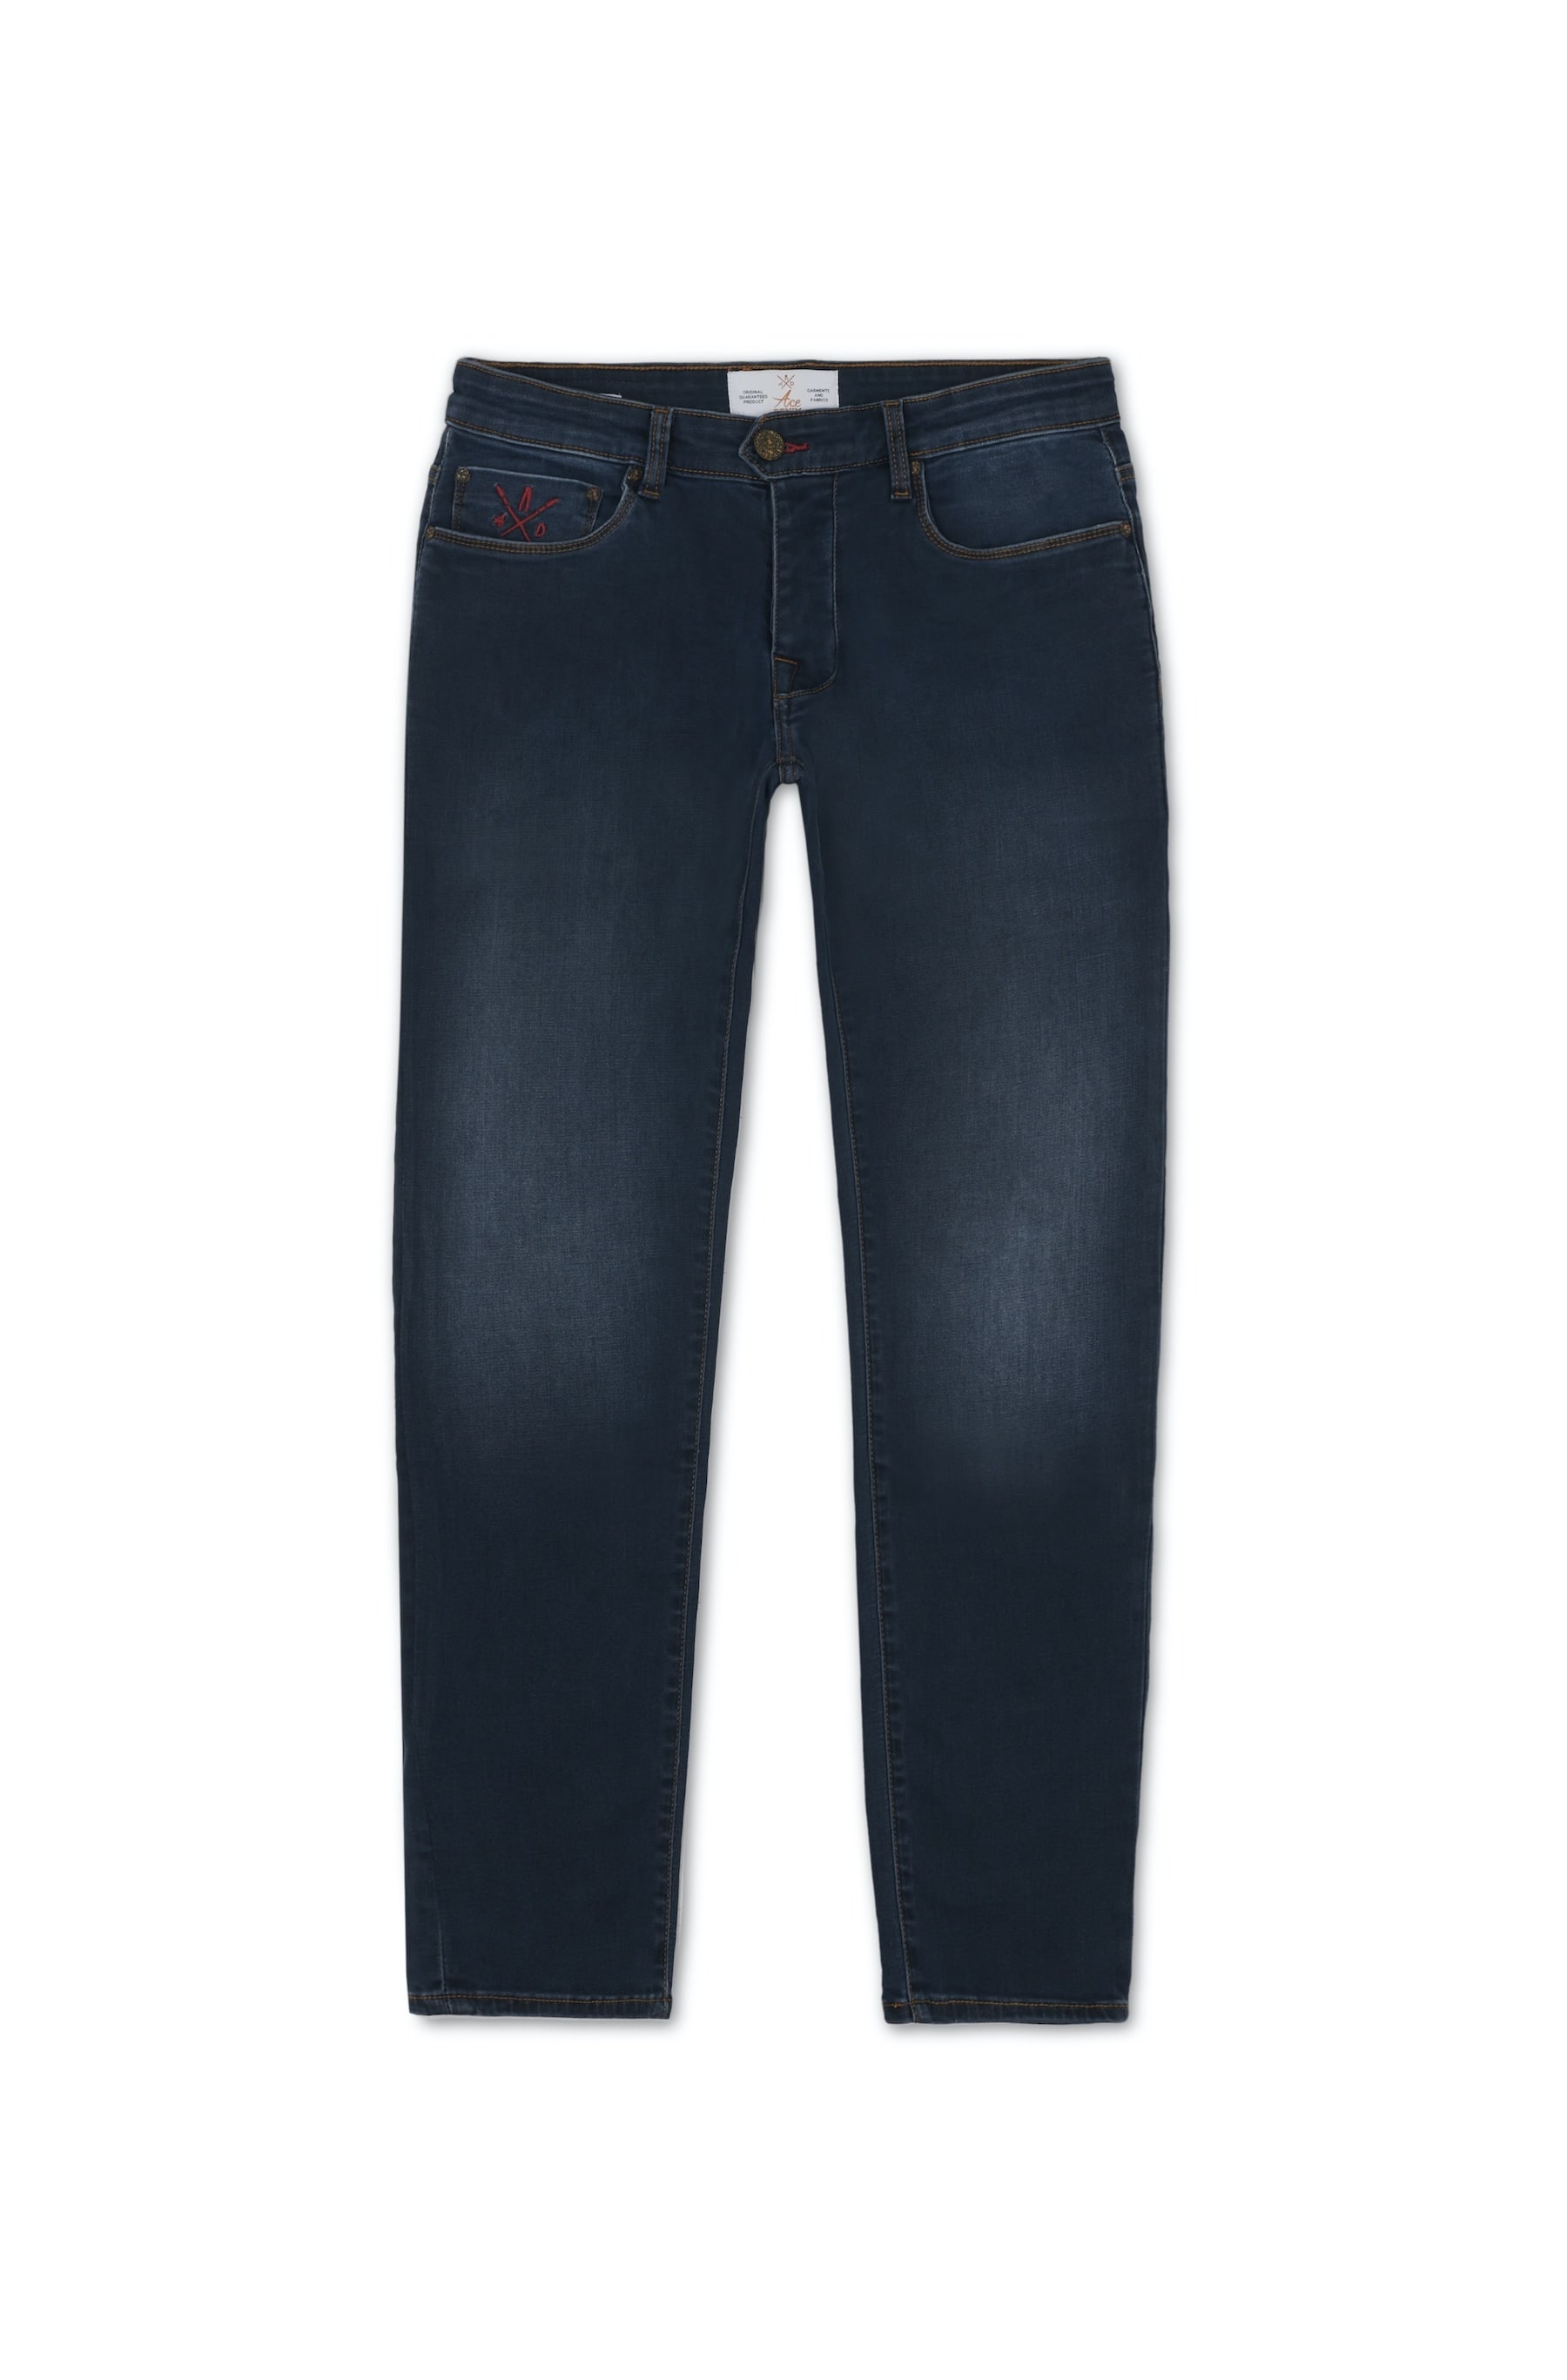 jeans homme bleu foncé slim straight details rouge